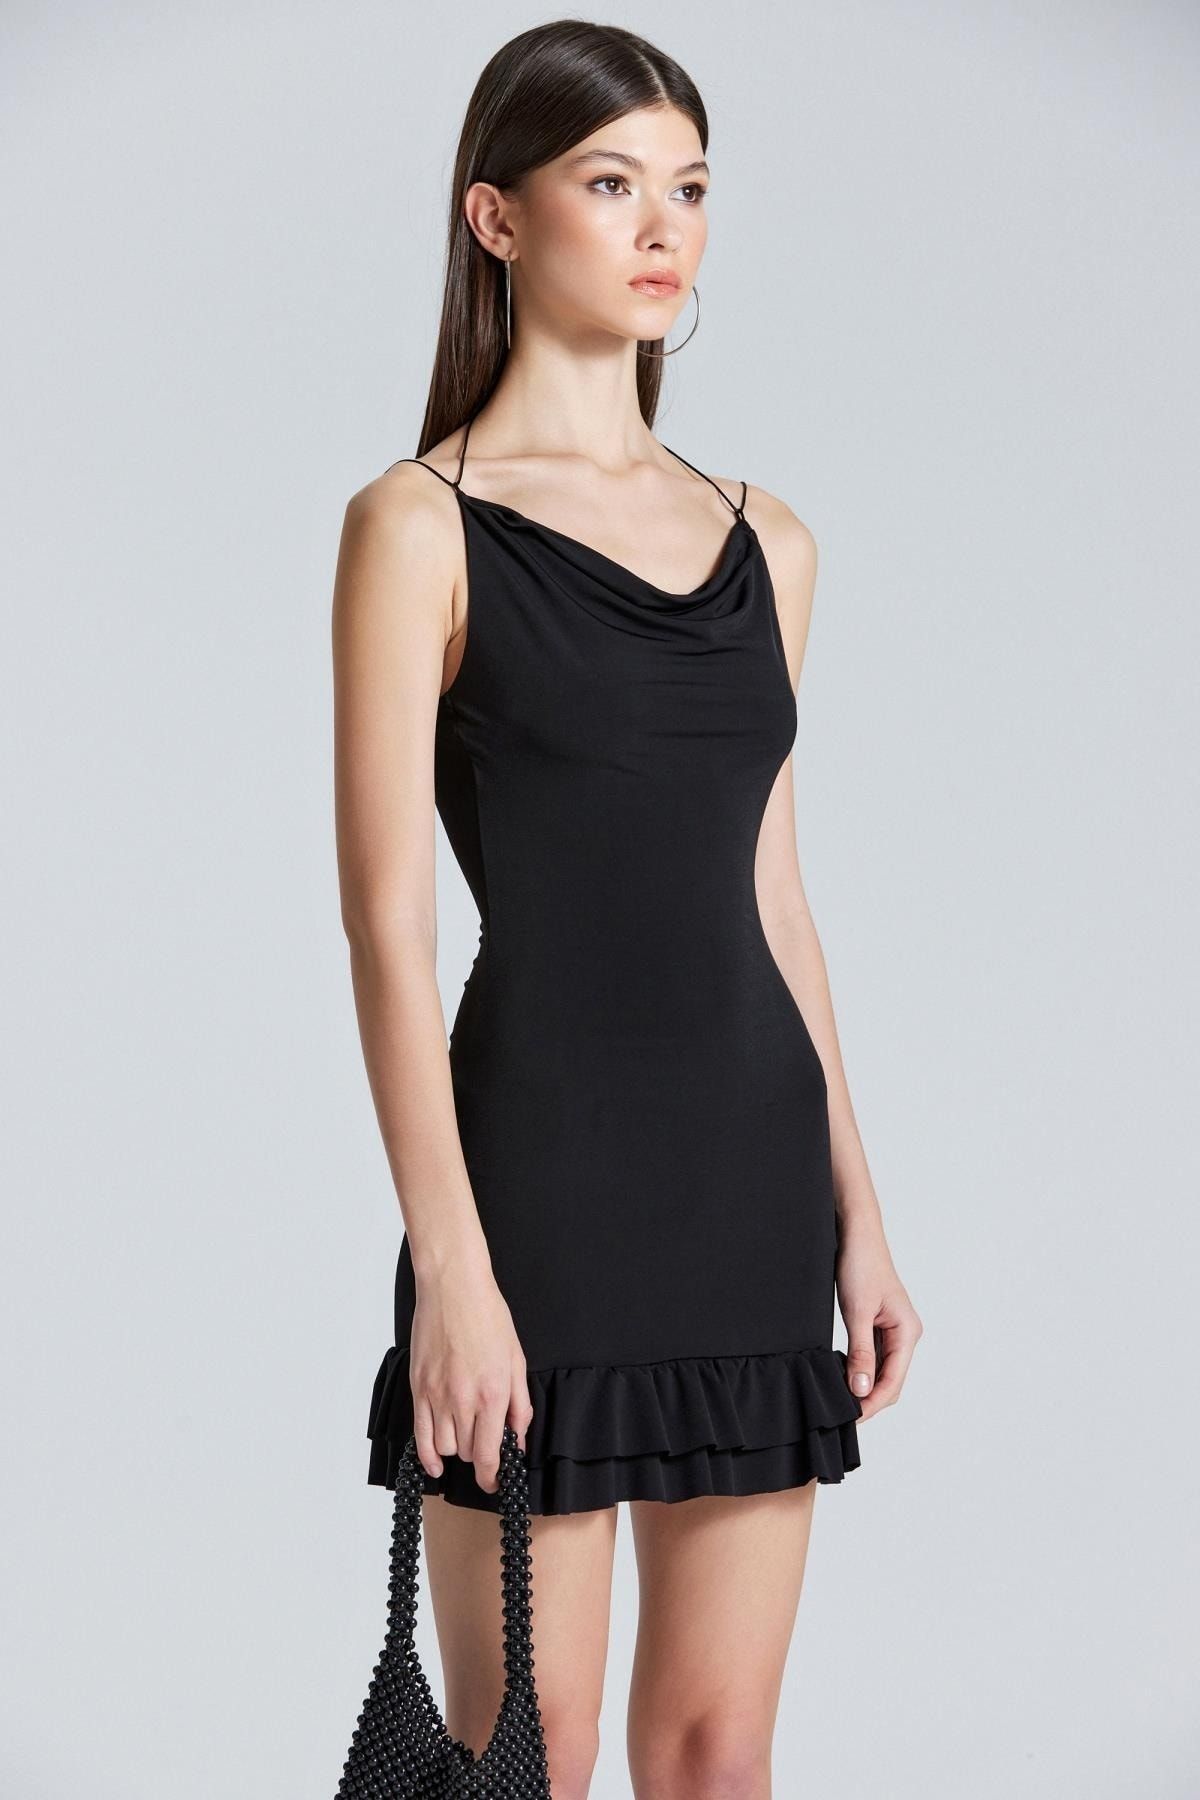 Boutiquen 2478 Etek Ucu Fırfırlı Siyah Askılı Elbise